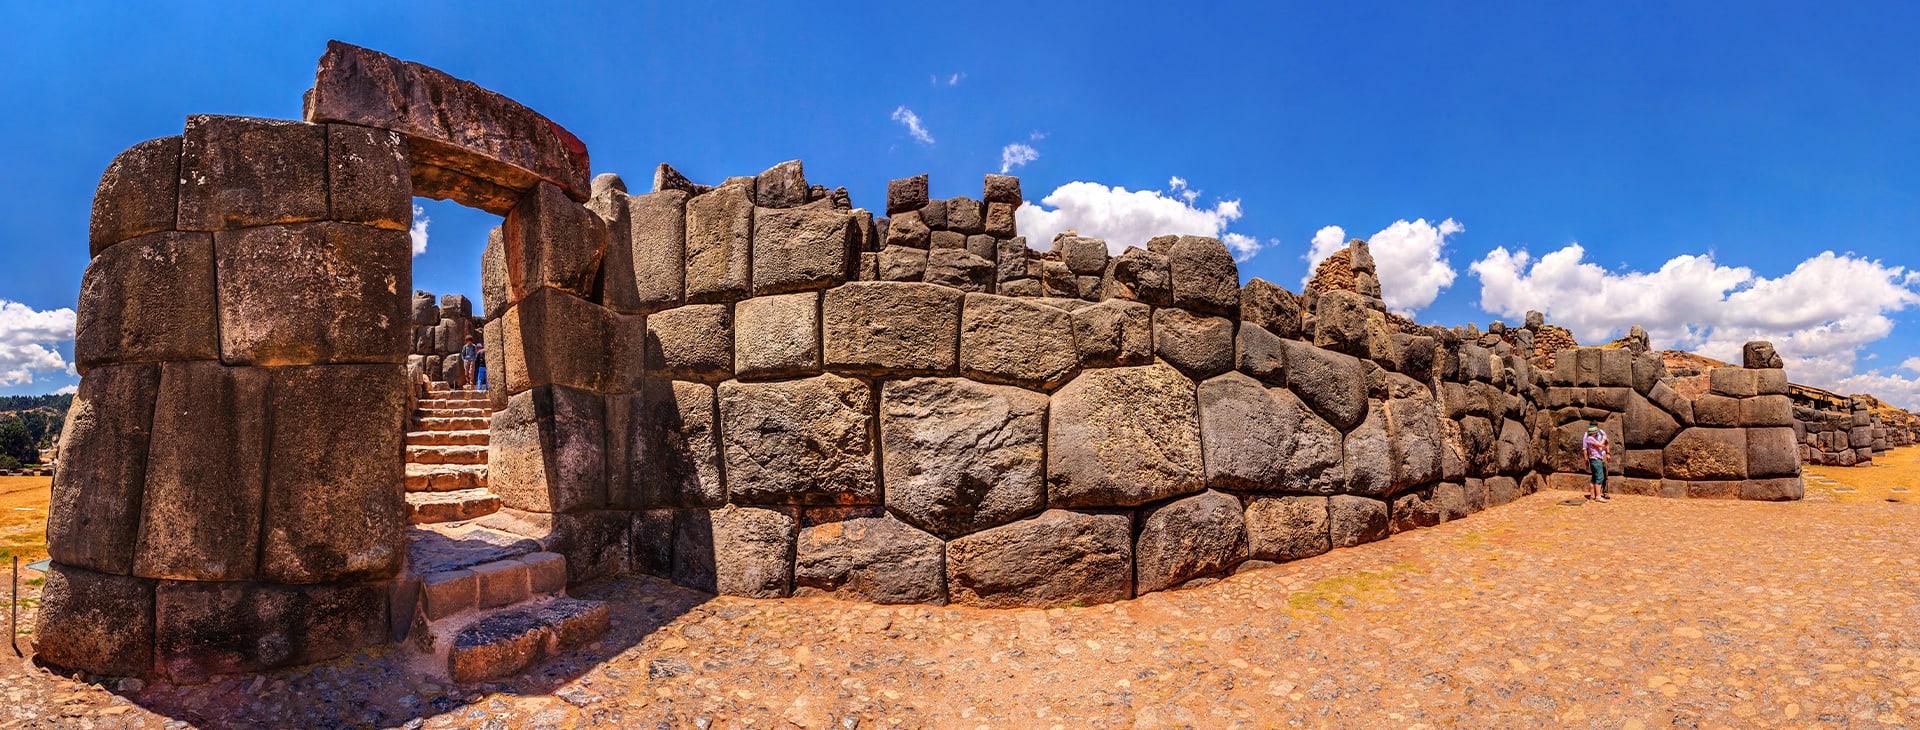 秘鲁印加遗址神圣的山谷